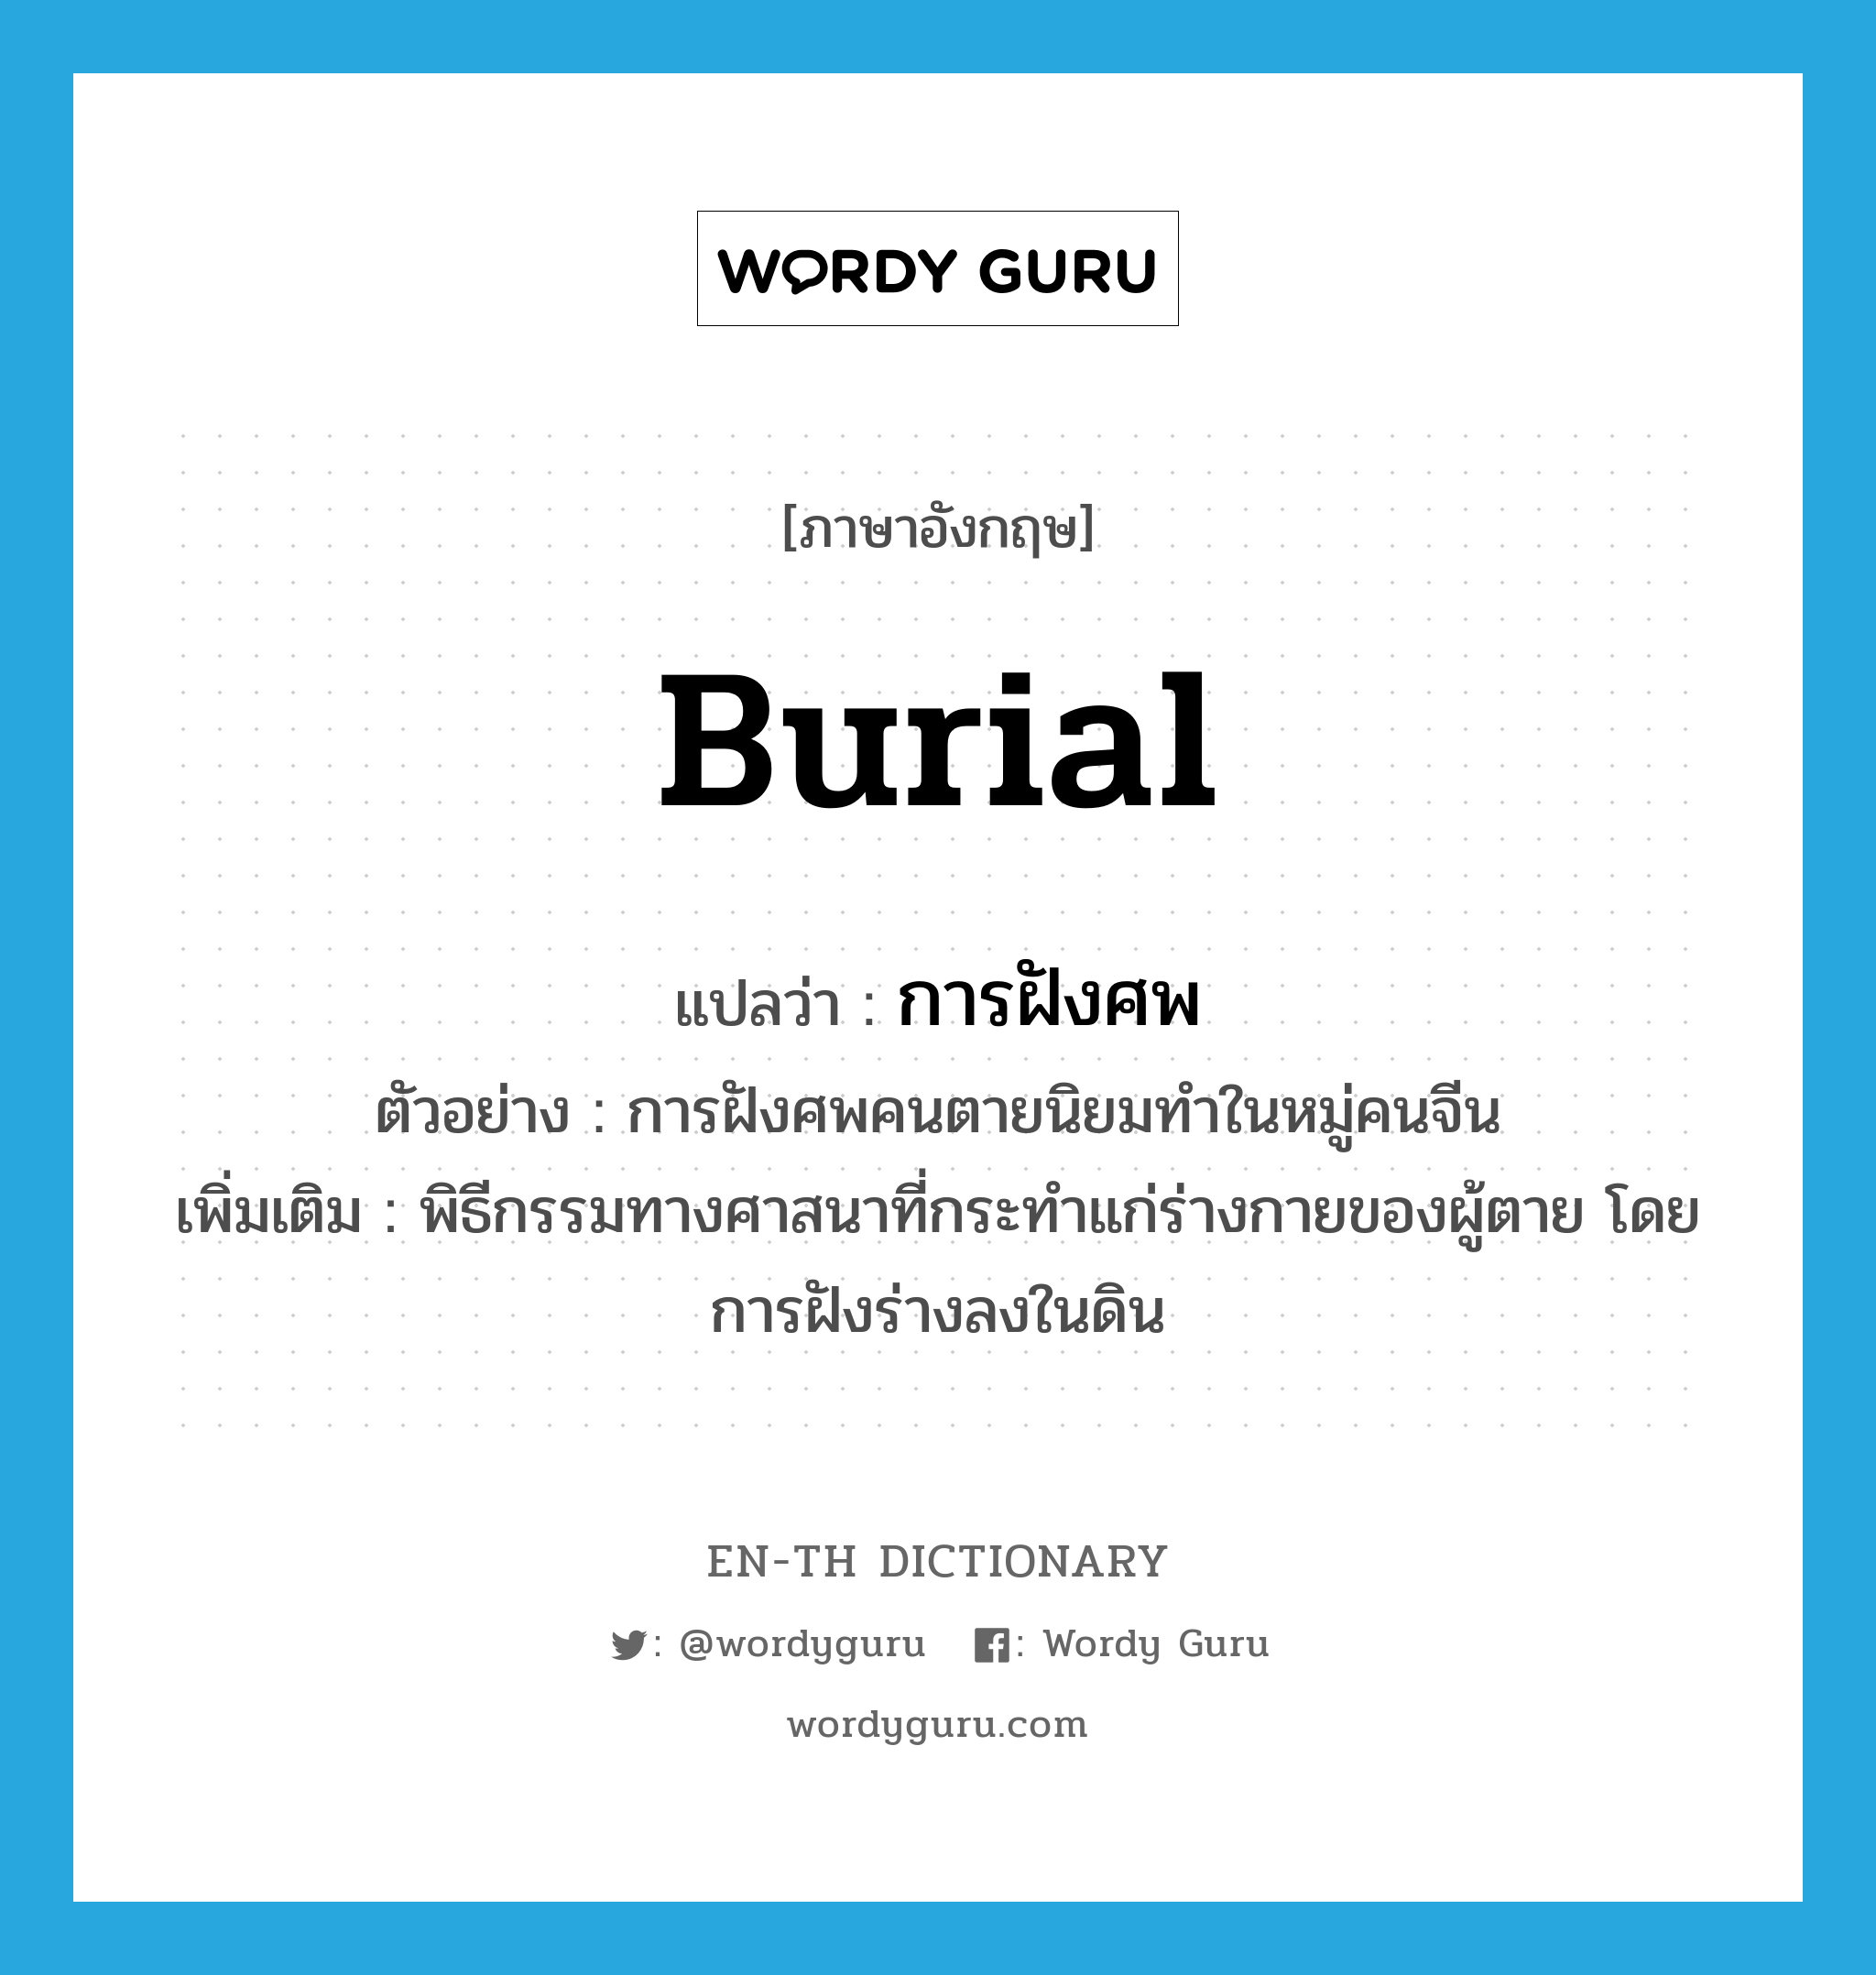 burial แปลว่า?, คำศัพท์ภาษาอังกฤษ burial แปลว่า การฝังศพ ประเภท N ตัวอย่าง การฝังศพคนตายนิยมทำในหมู่คนจีน เพิ่มเติม พิธีกรรมทางศาสนาที่กระทำแก่ร่างกายของผู้ตาย โดยการฝังร่างลงในดิน หมวด N